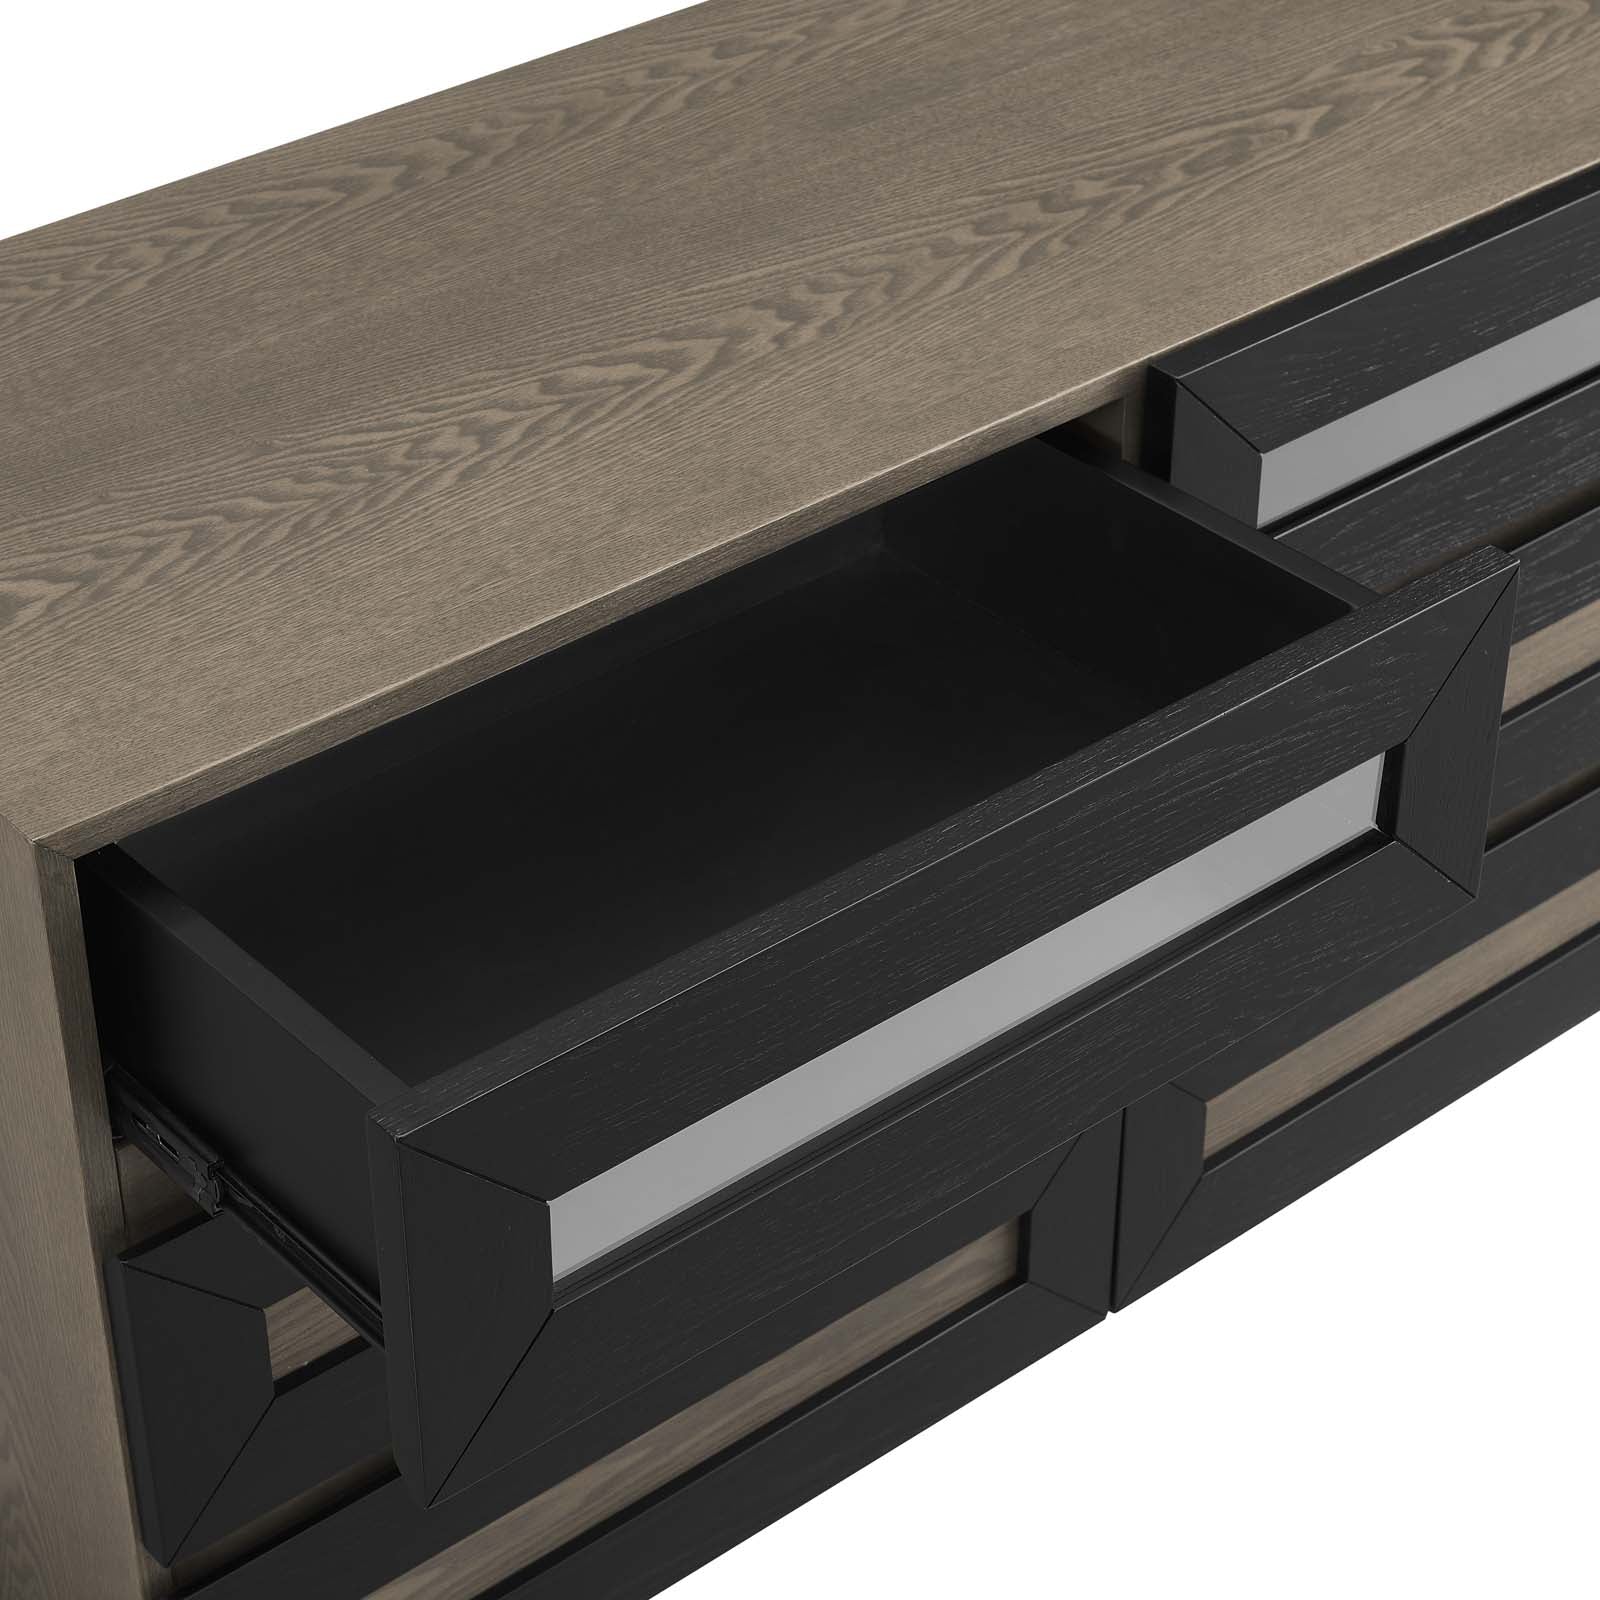 Modway Dressers - Merritt Dresser Oak